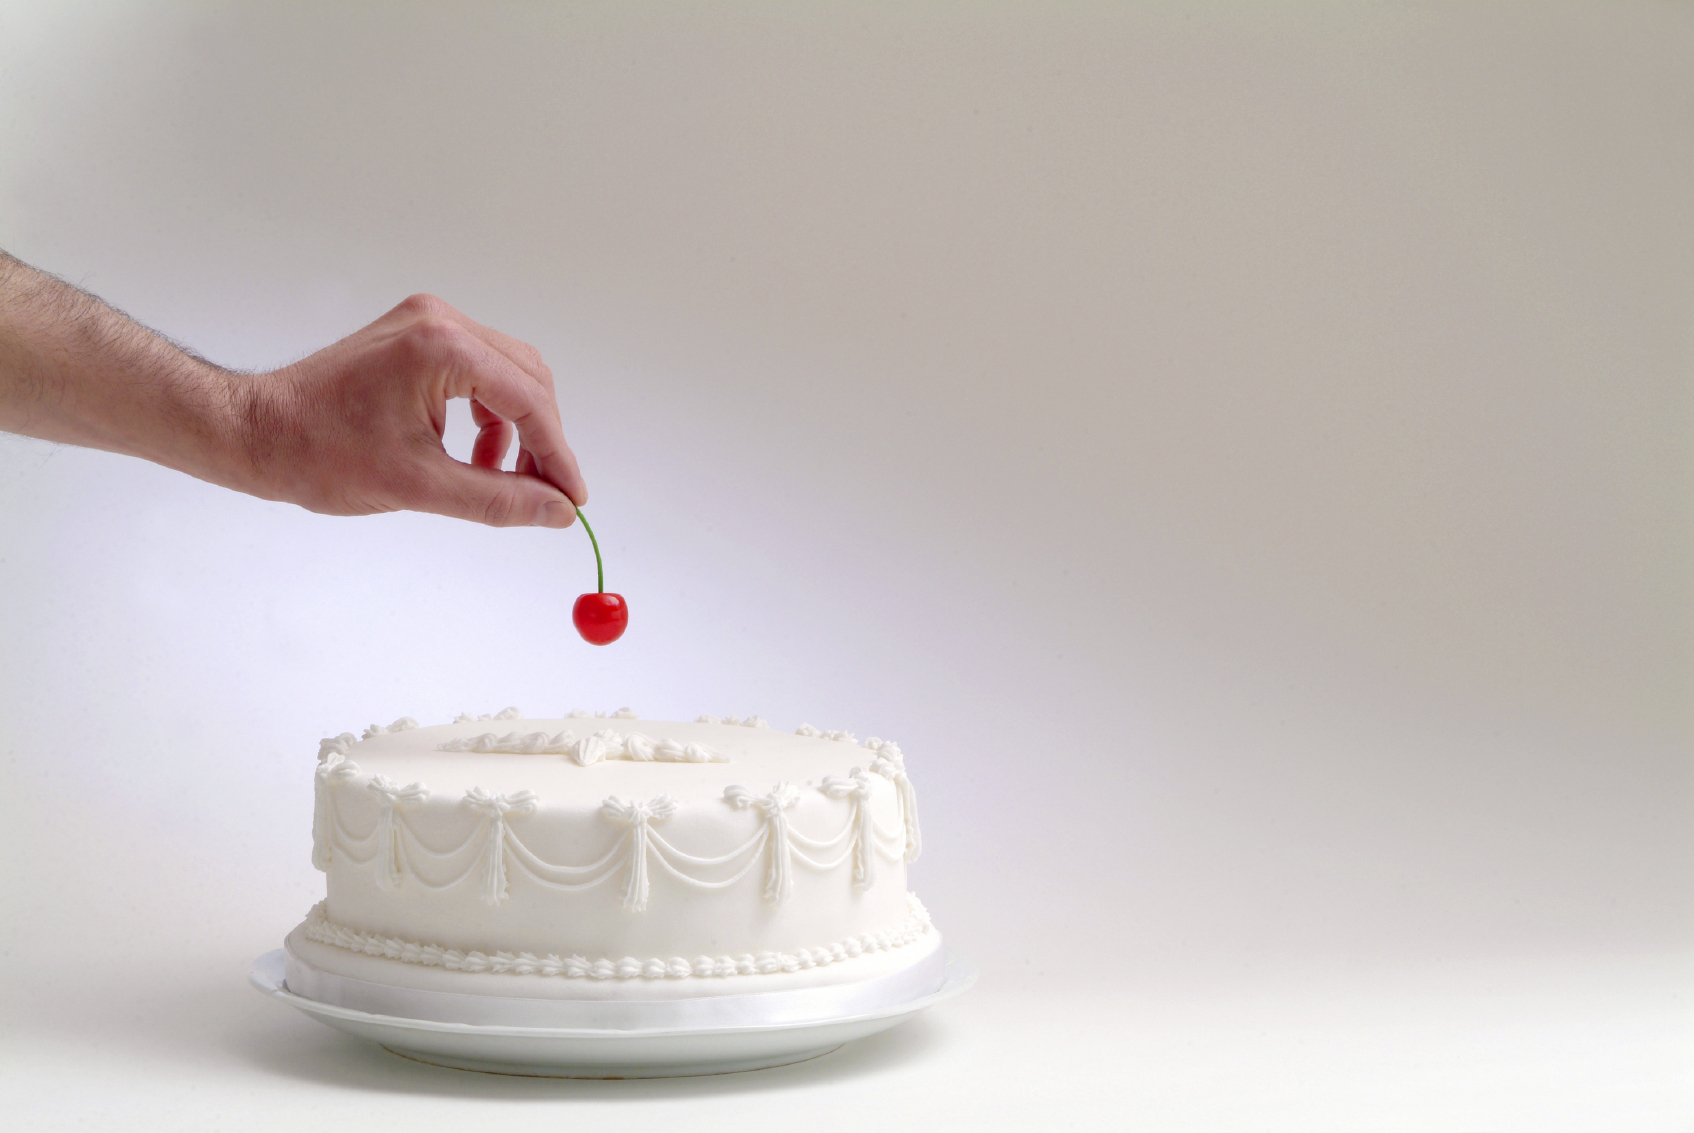 Share SP 2015: o bolo não precisa de cereja